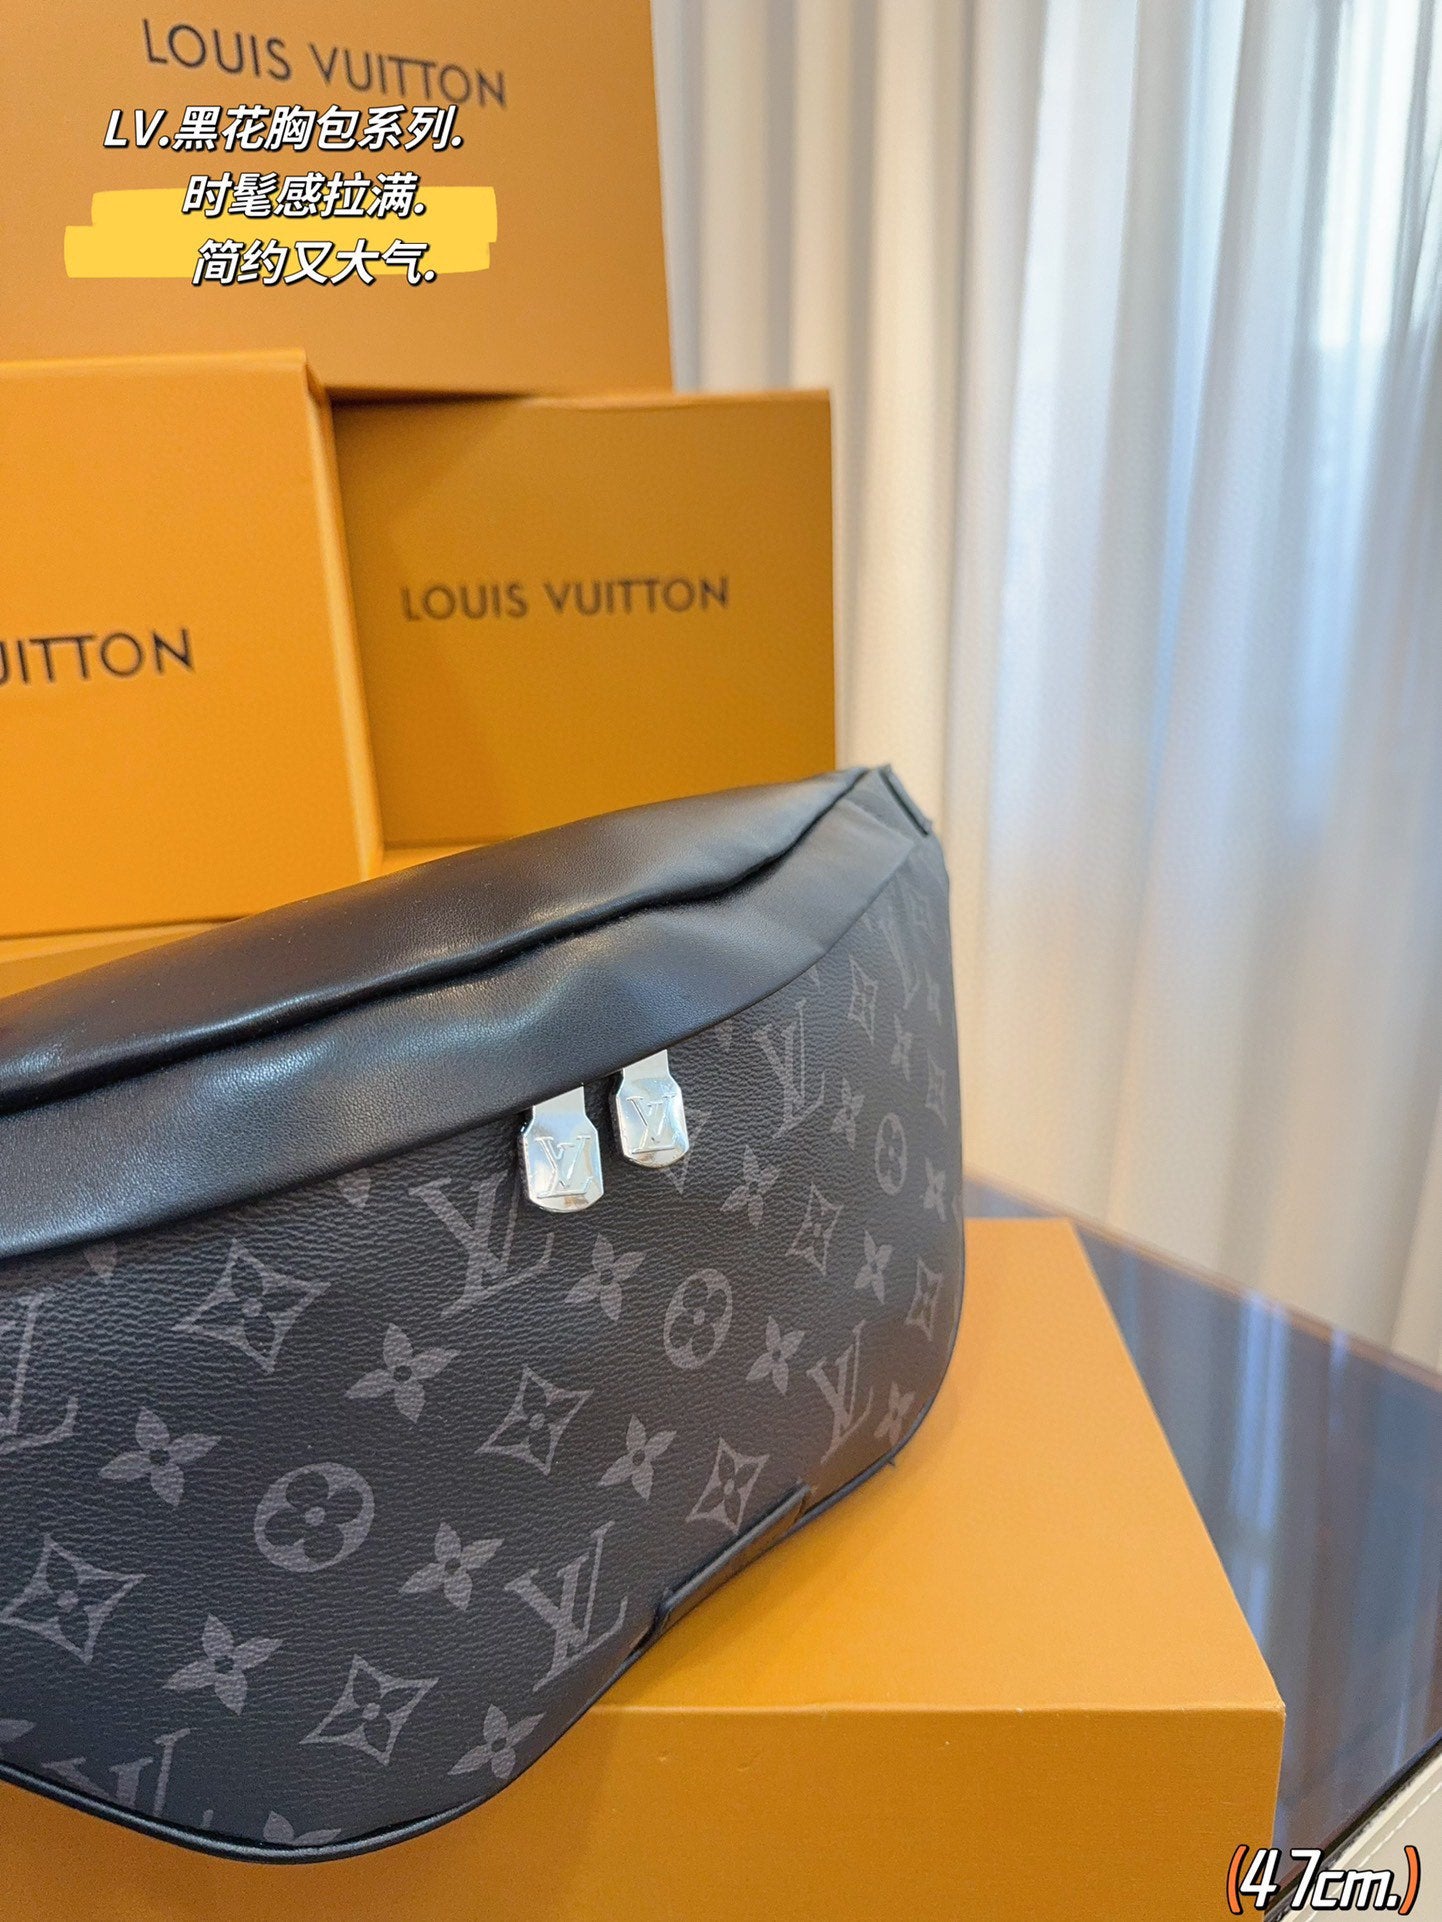 Louis vuitton handbags ( bumbag waistbag)